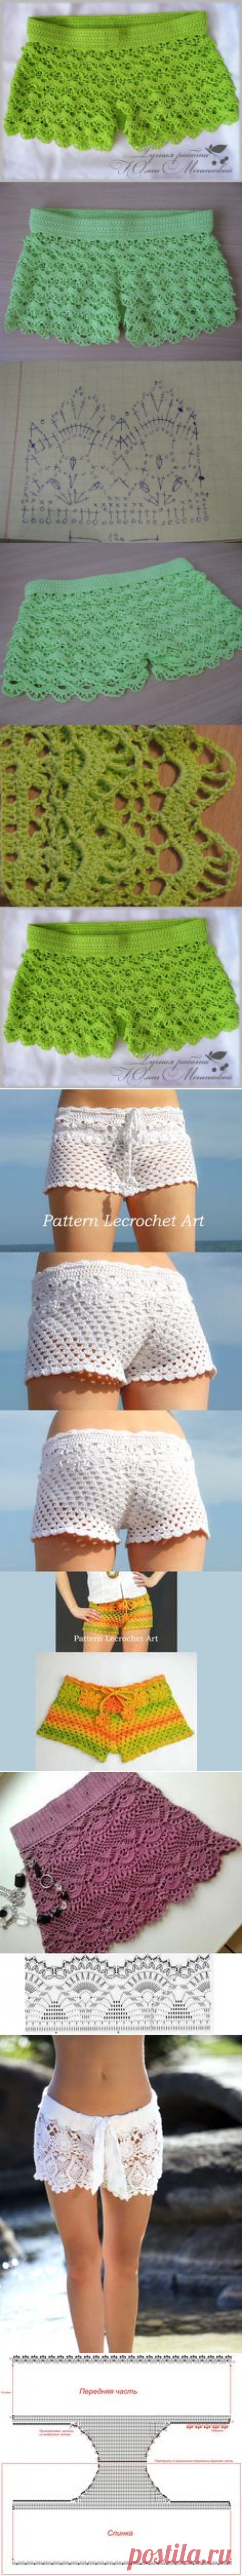 Crochet so b/eauty shorts